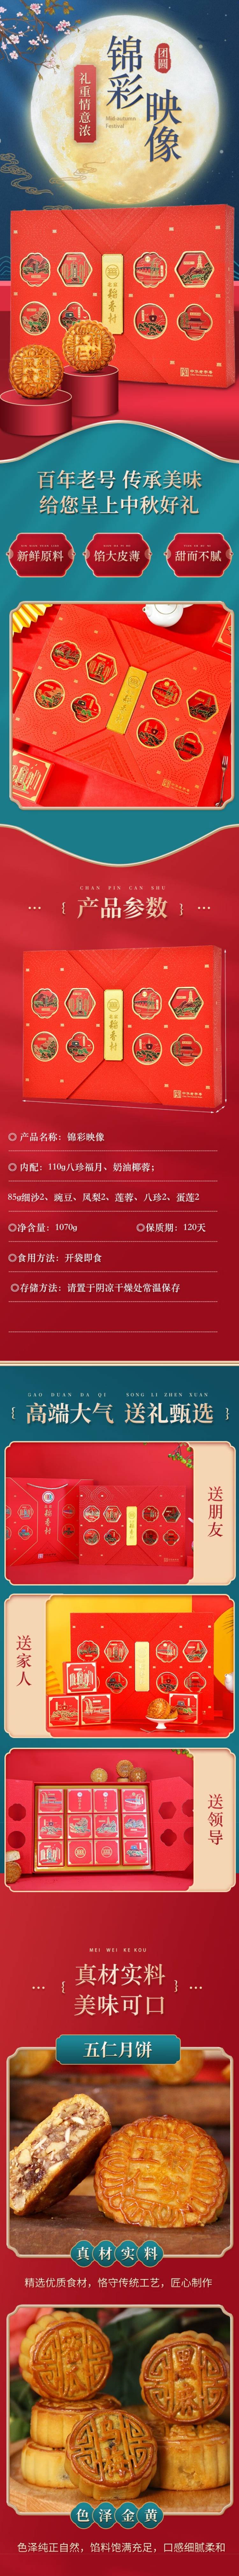 北京稻香村锦彩映象月饼礼盒1070g (1).jpg